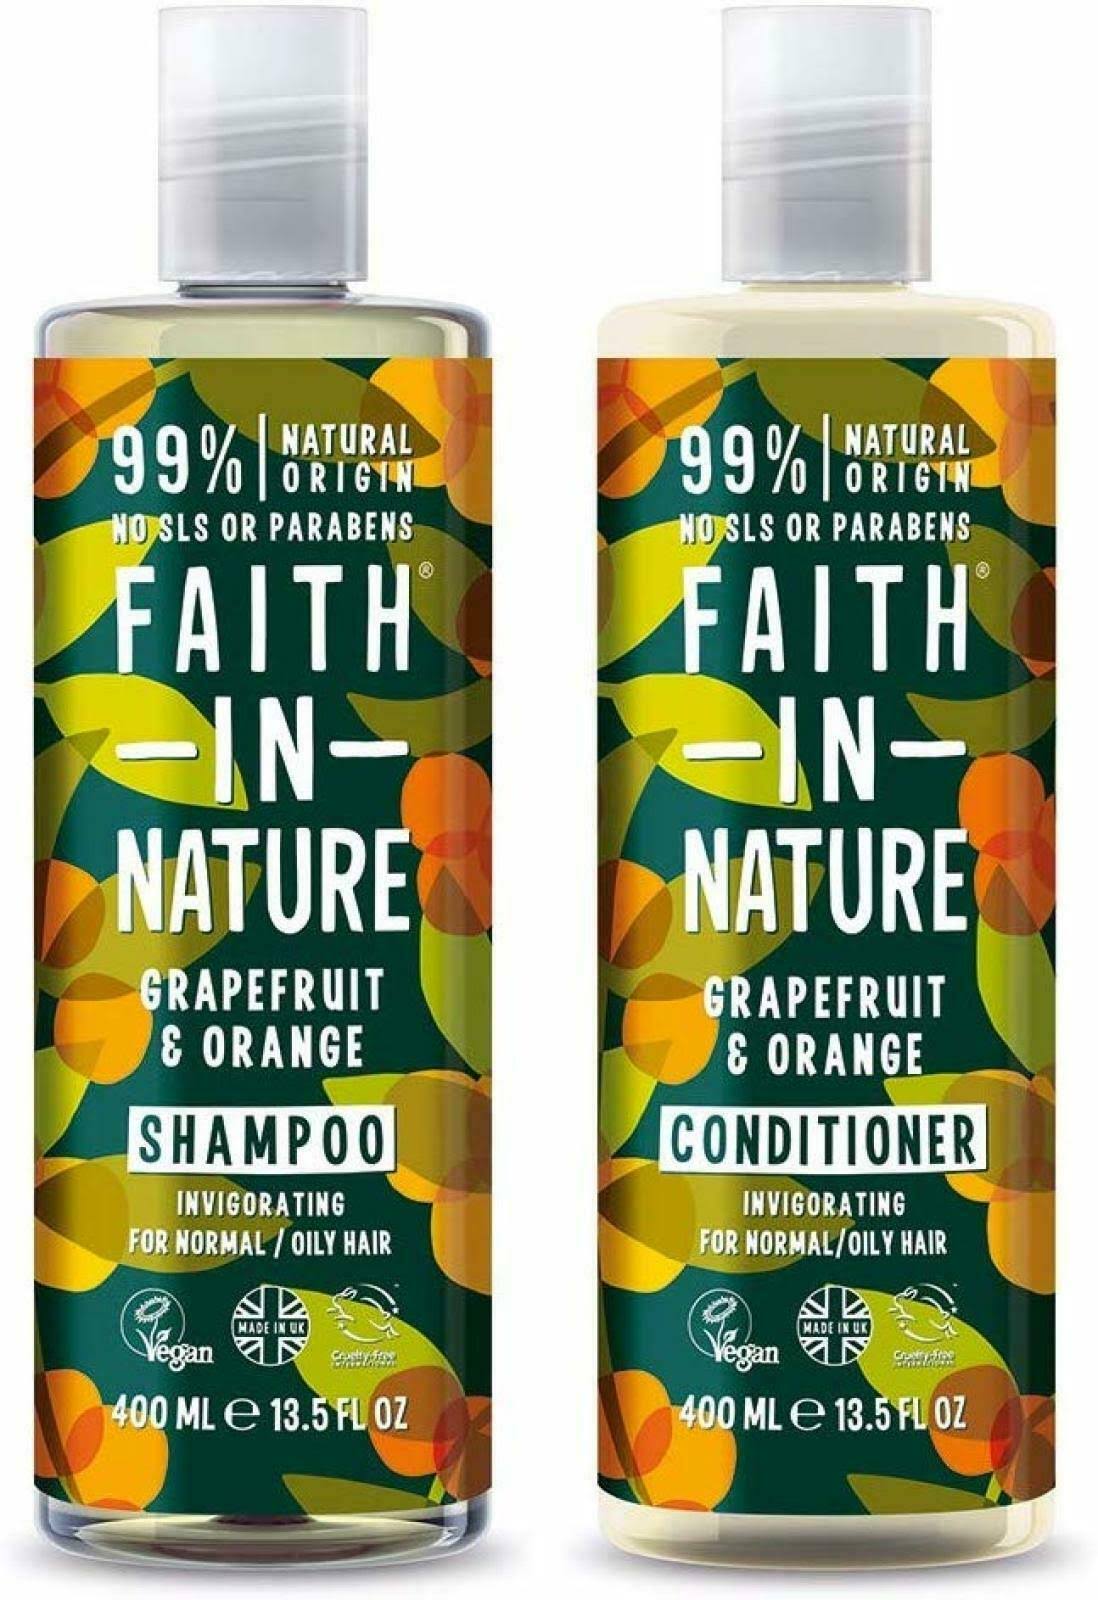 Faith in Nature Grapefruit & Orange Shampoo and Conditioner